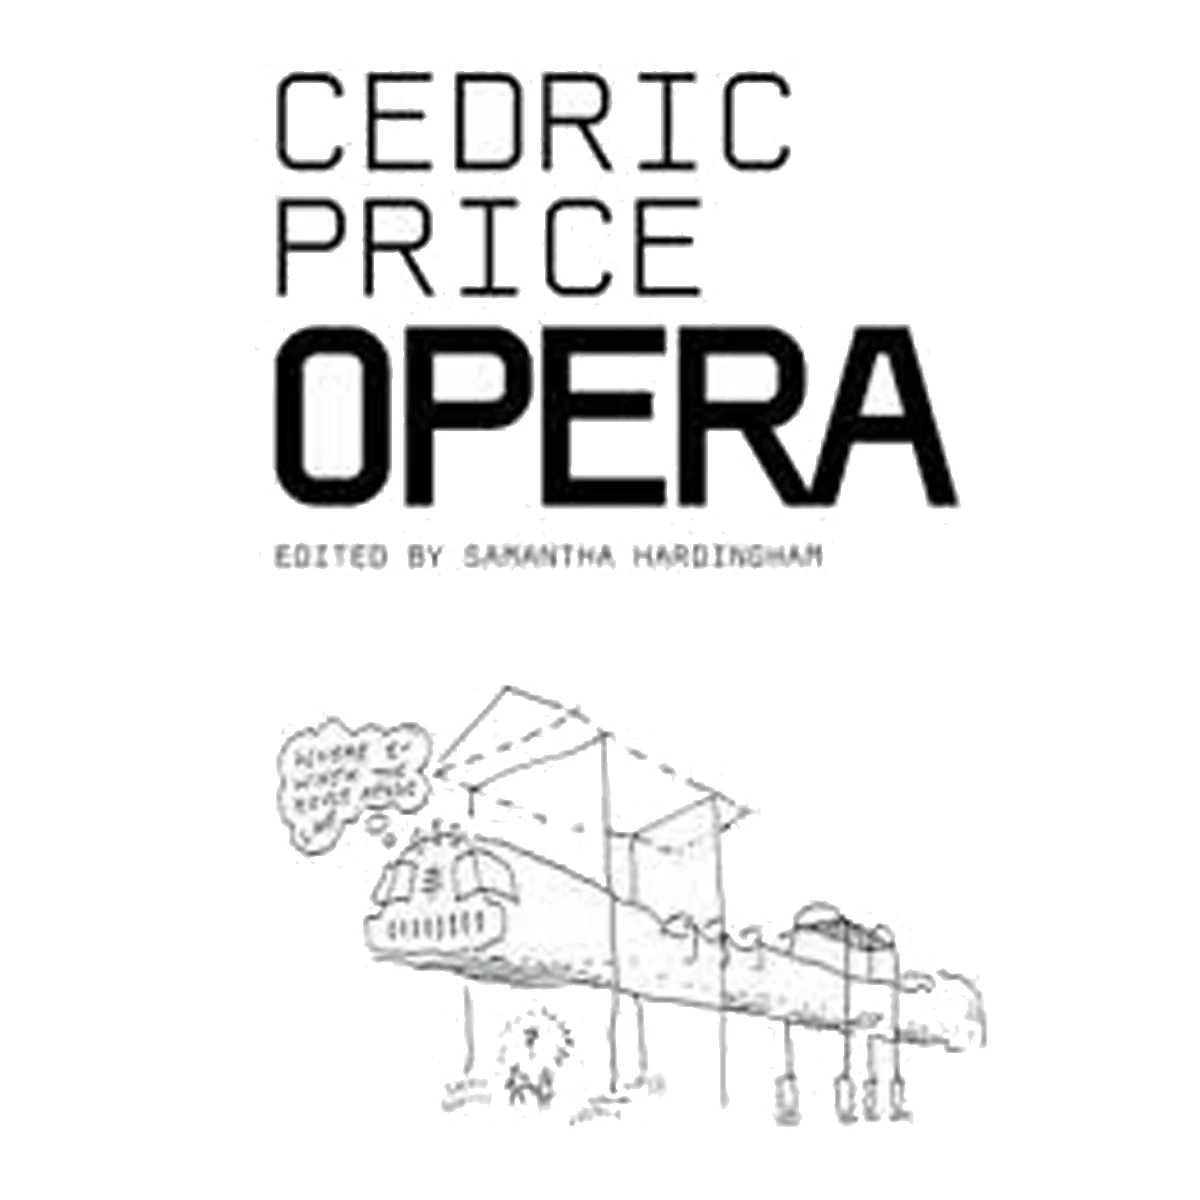 Cedric Price Opera